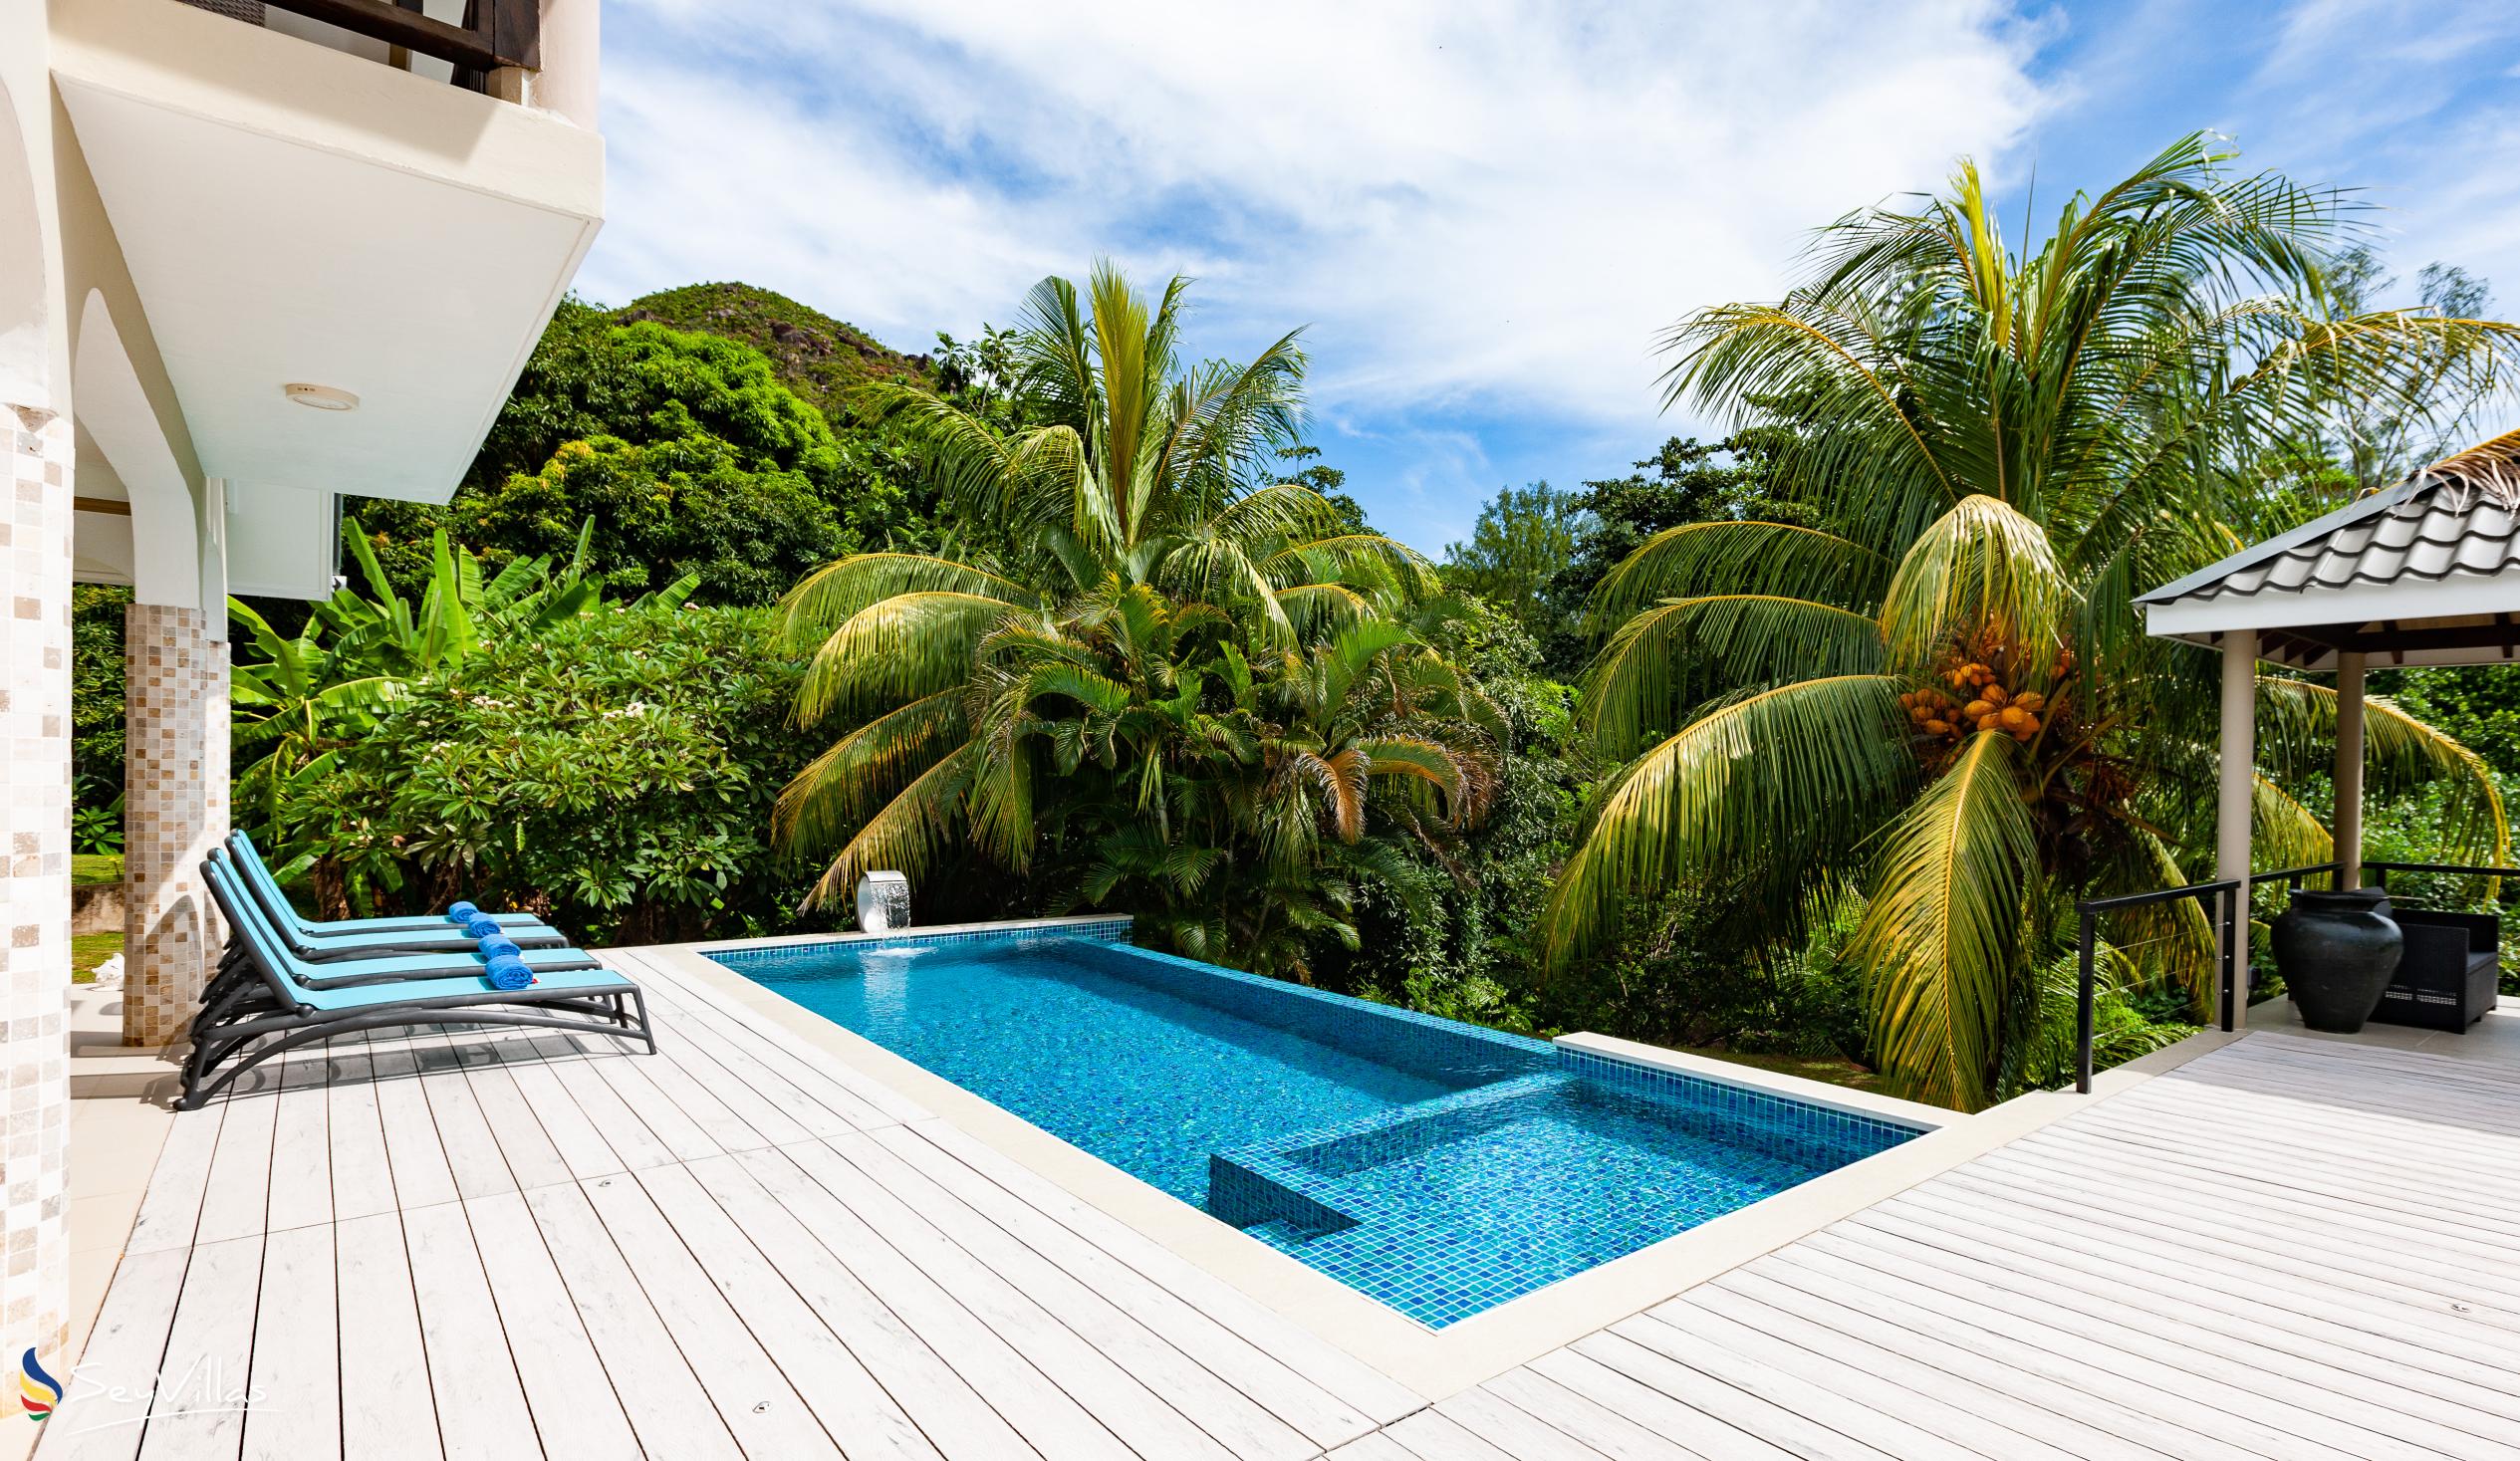 Foto 31: Tranquility Villa - Aussenbereich - Praslin (Seychellen)